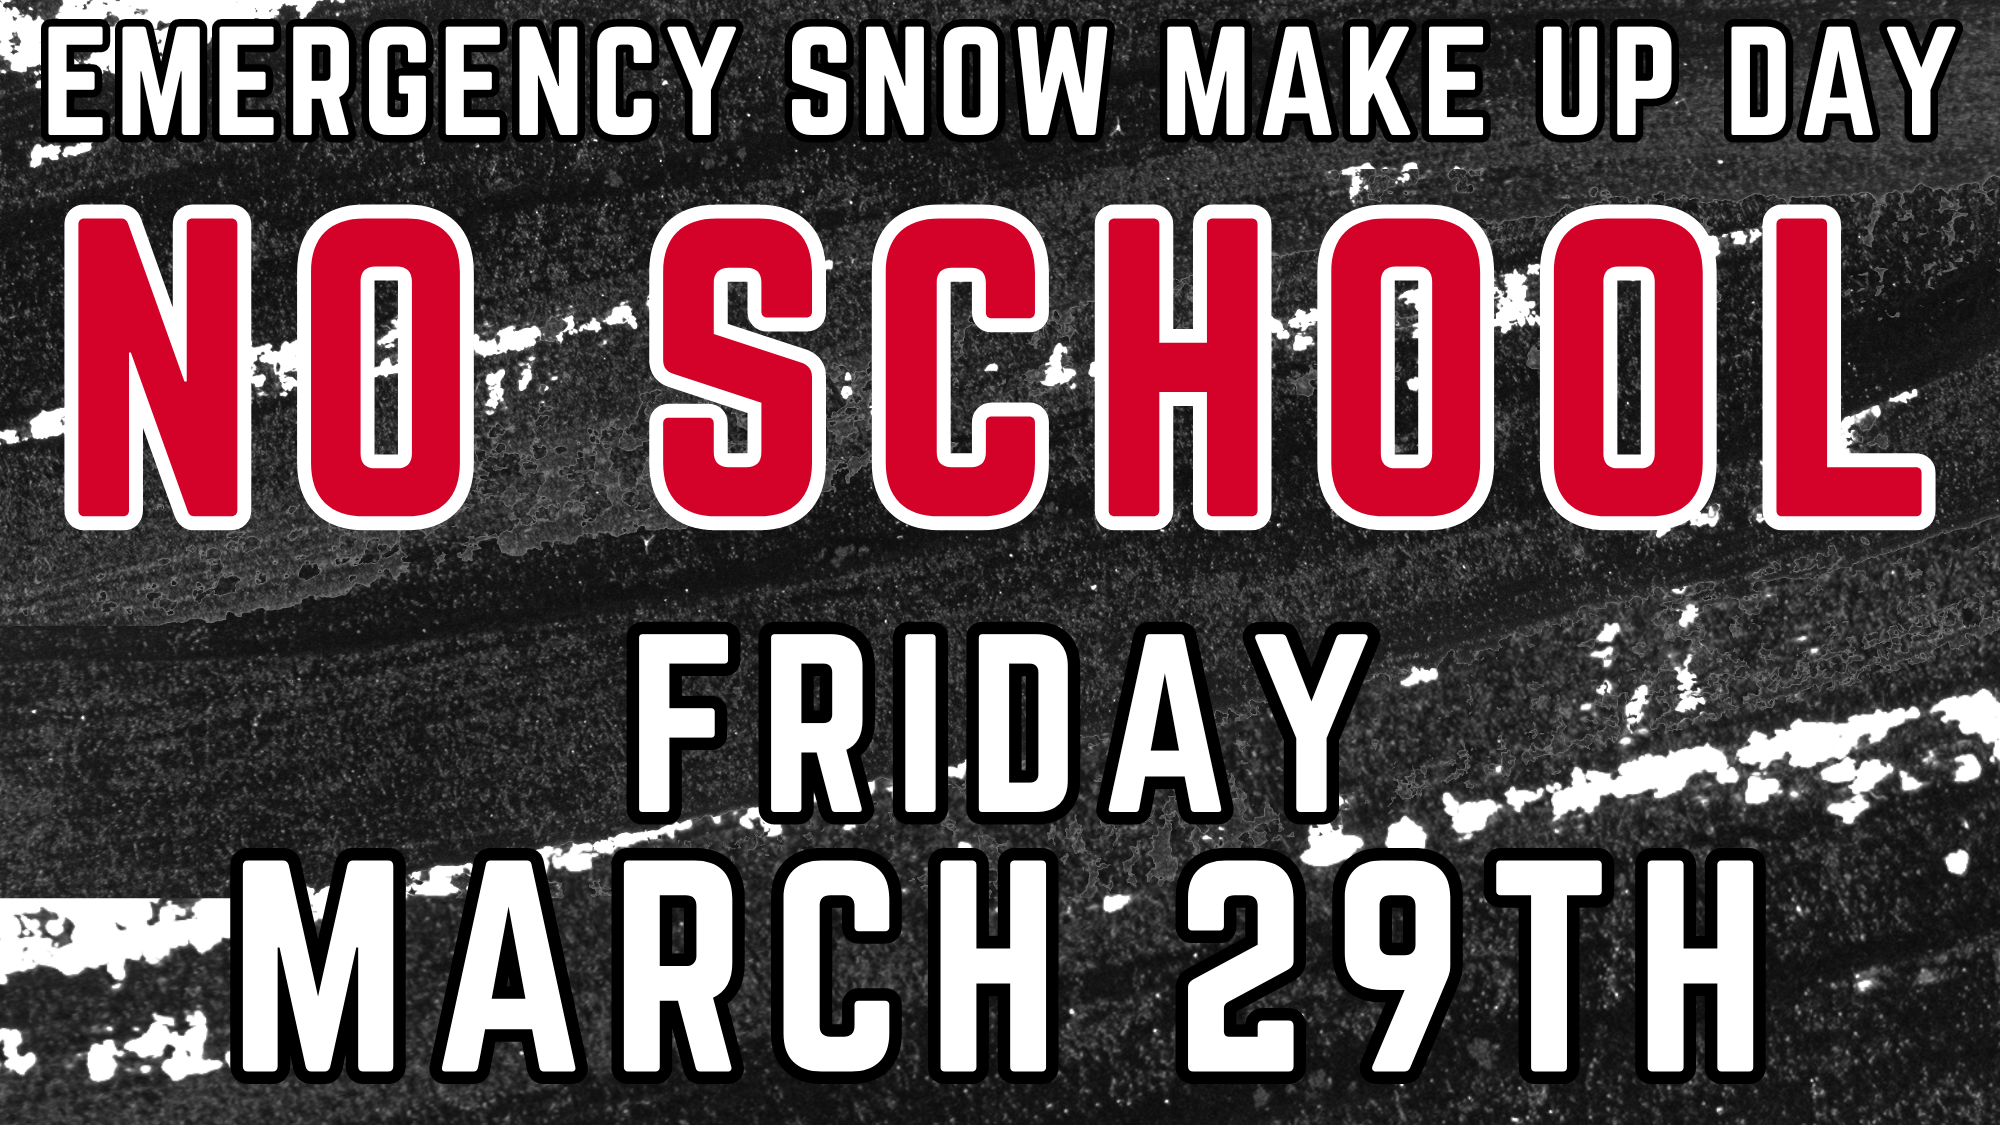 No school March 29th